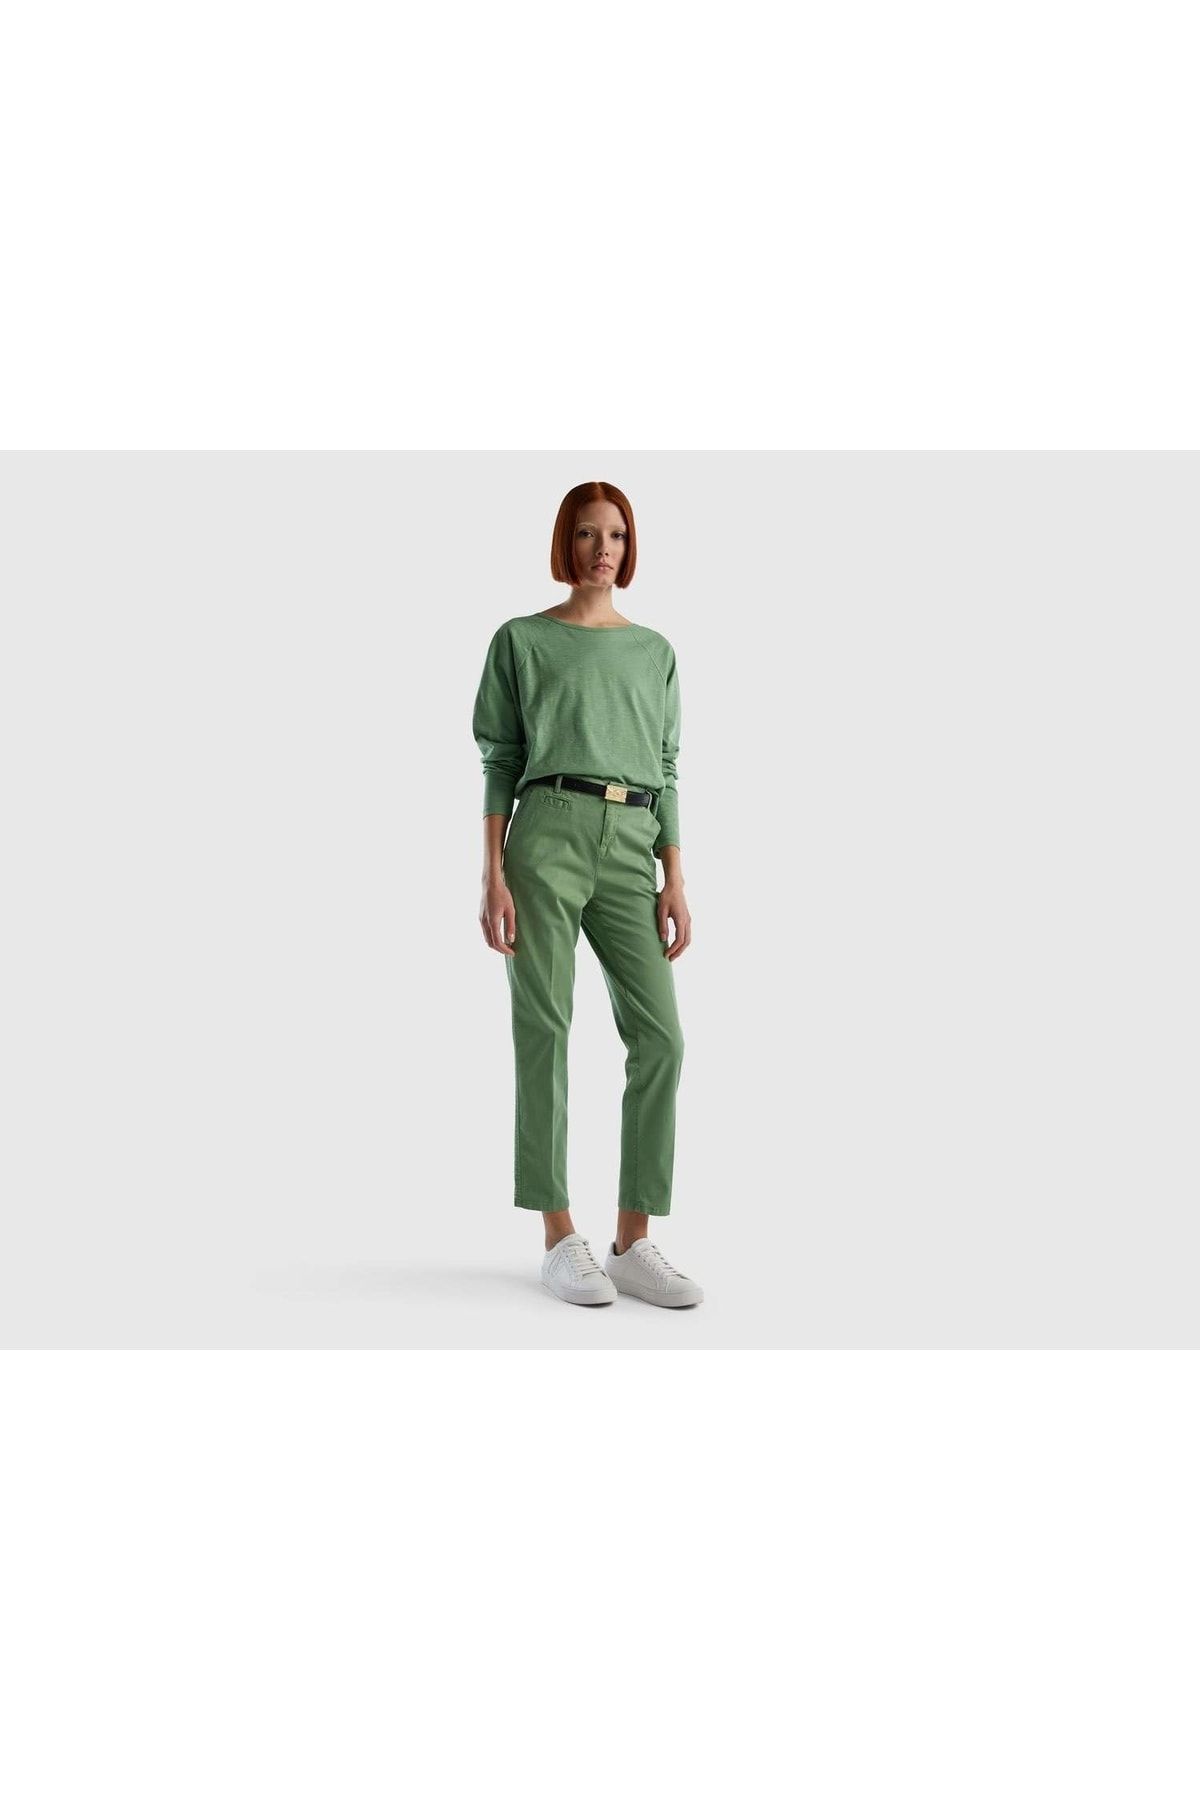 United Colors of Benetton Kadın Çağla Yeşili Elastanlı Basic Chino Pantolon